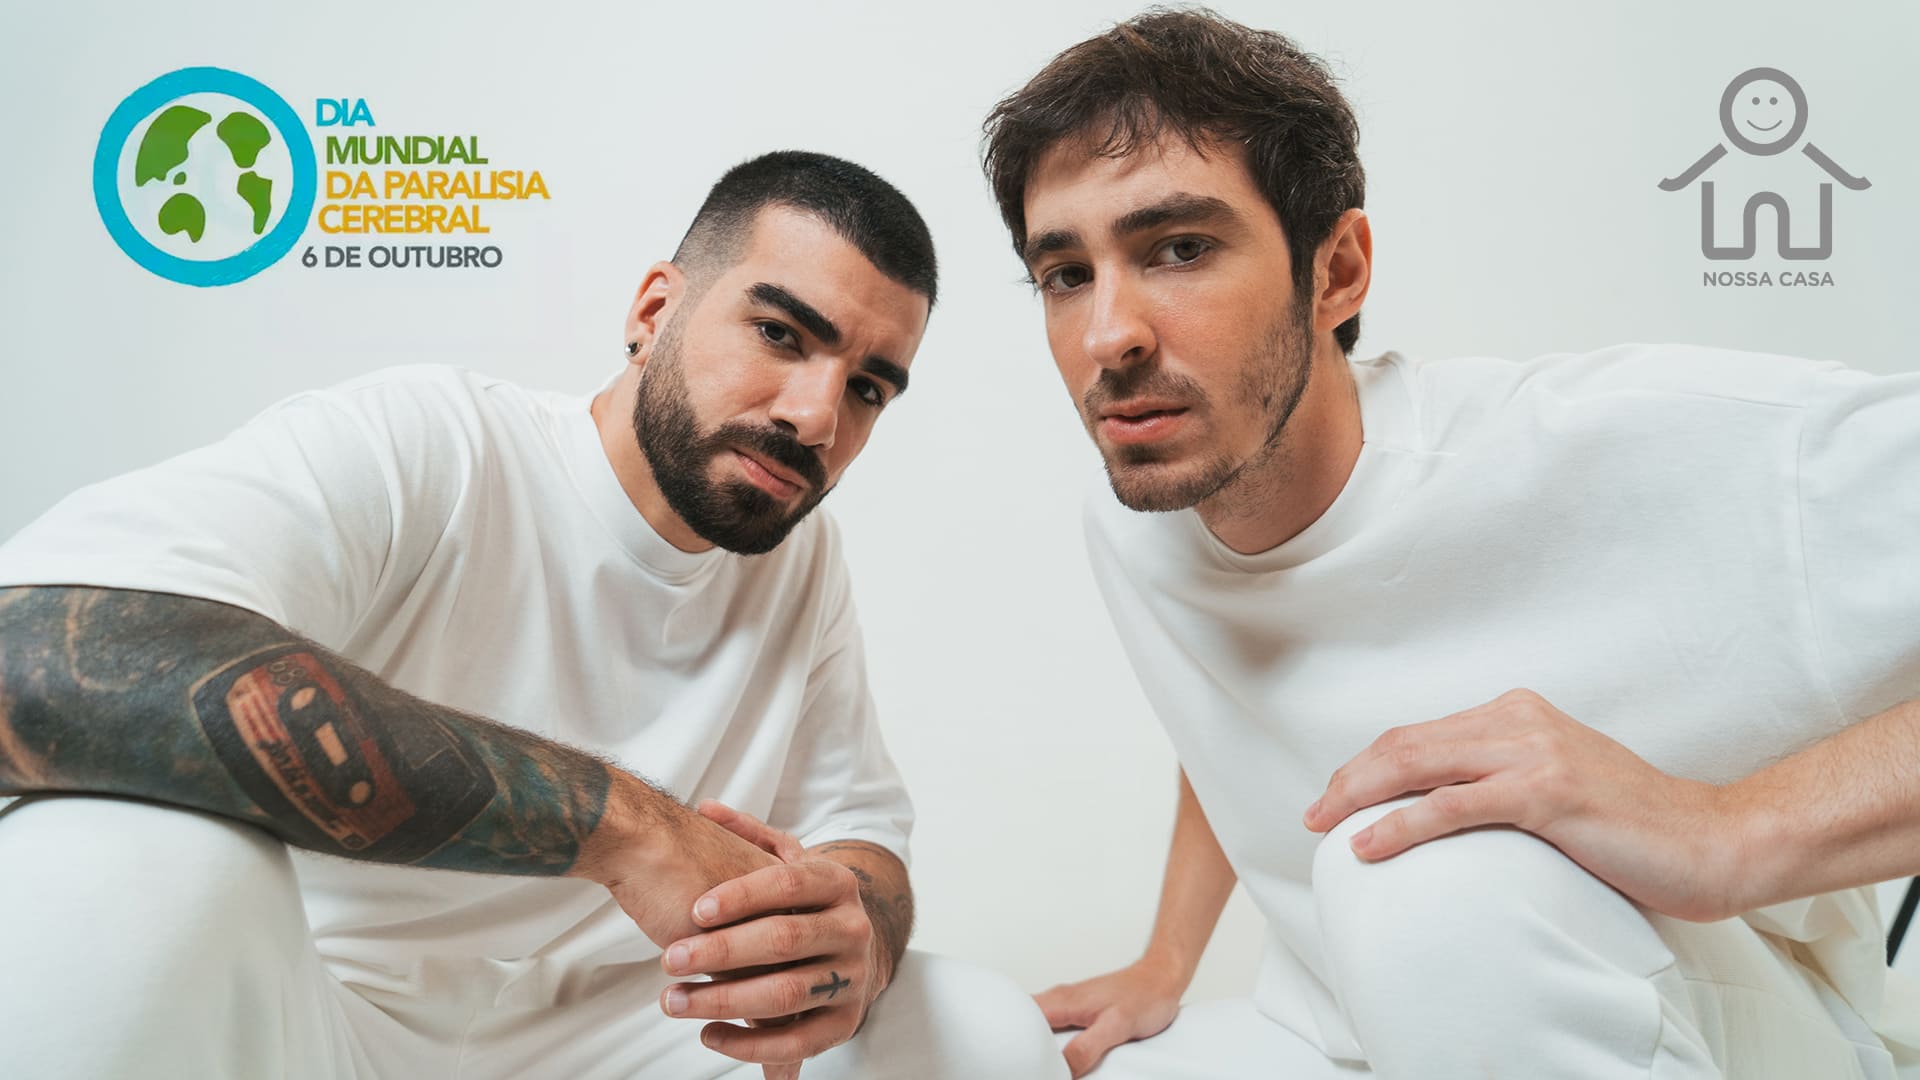 Dois homens de pele clara, integram o Duo OutroEu, com show pelo Dia Mundial da Paralisia Cerebral 2021.